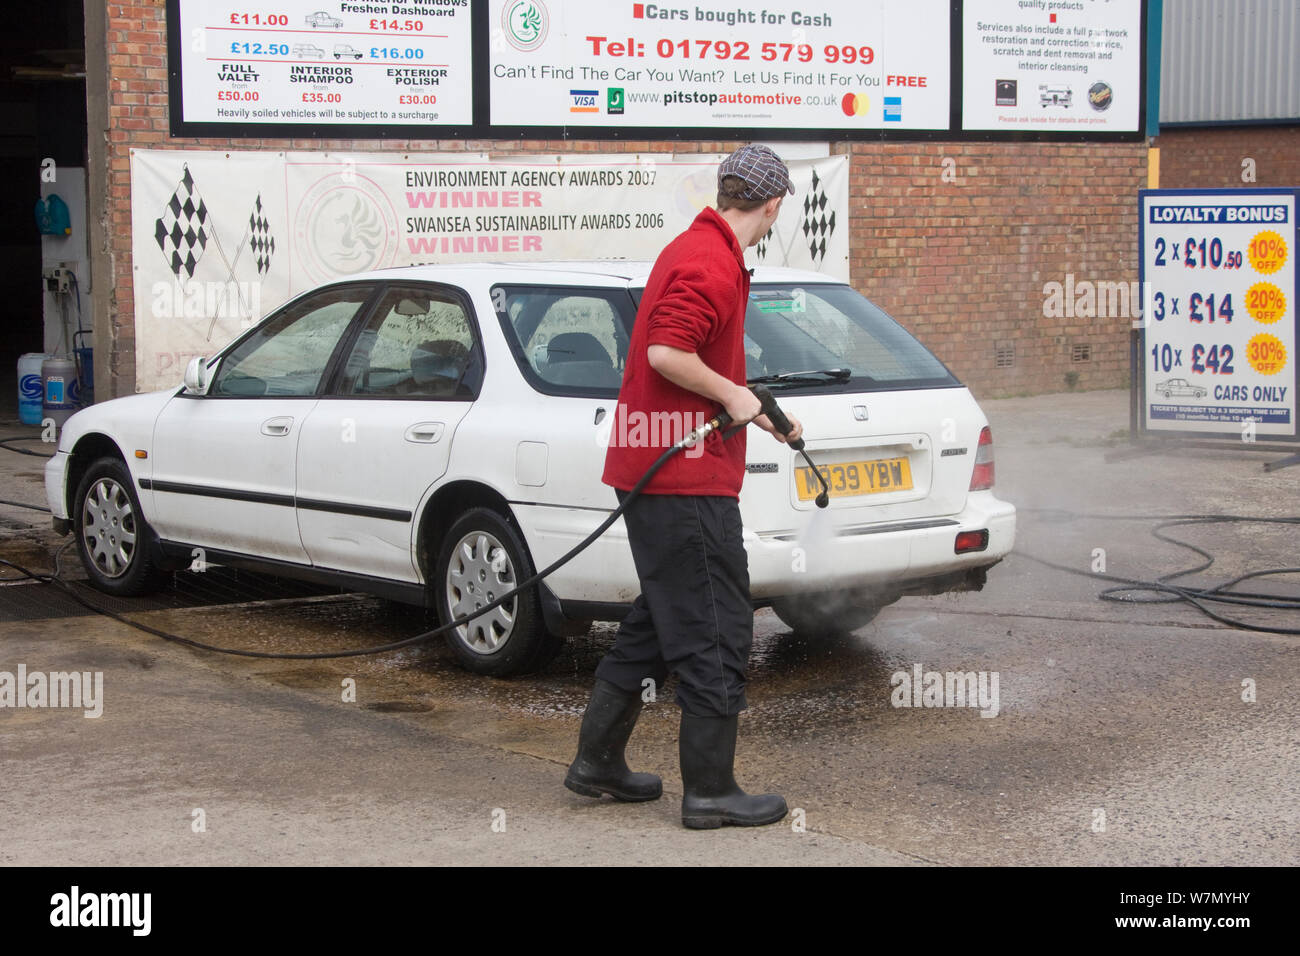 Preisgekrönte Auto waschen Geschäft mit recyceltem Wasser mit Schilfrohr Erhaltung der kostbaren Ressource zu Beihilfen, Swansea, Wales, Großbritannien 2009 Stockfoto